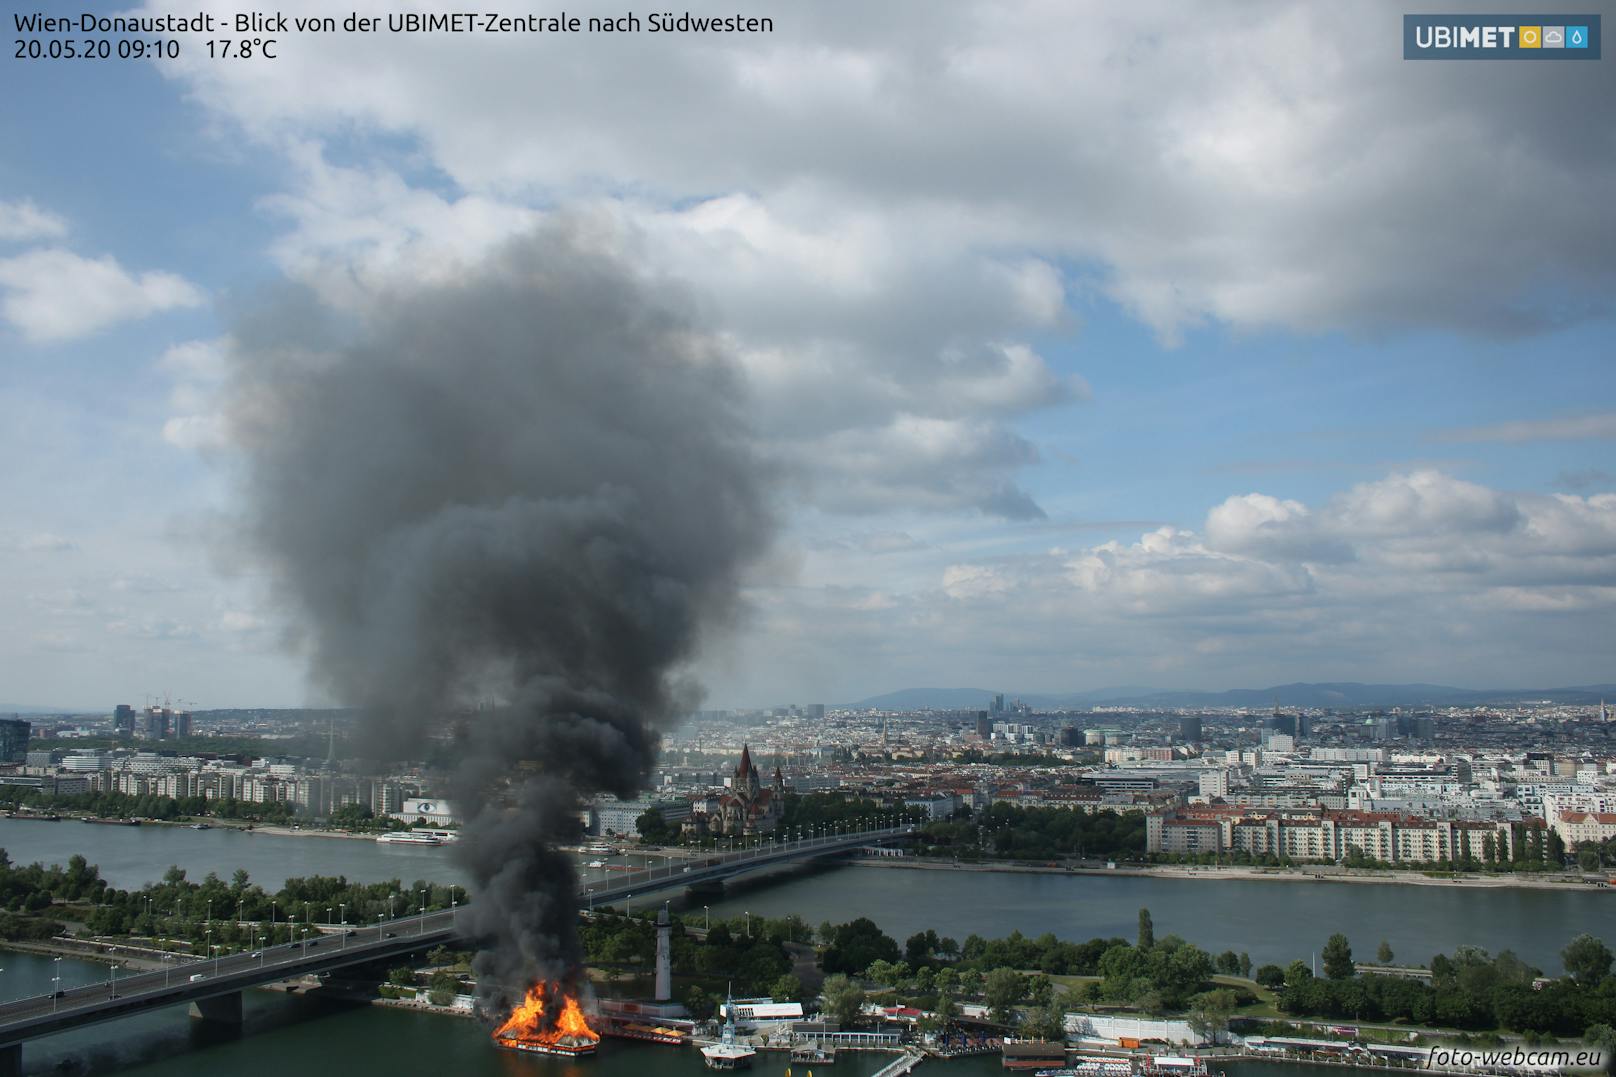 Eine Webcam der UBIMET zeigt deutlich, wann der Brand ausbrach